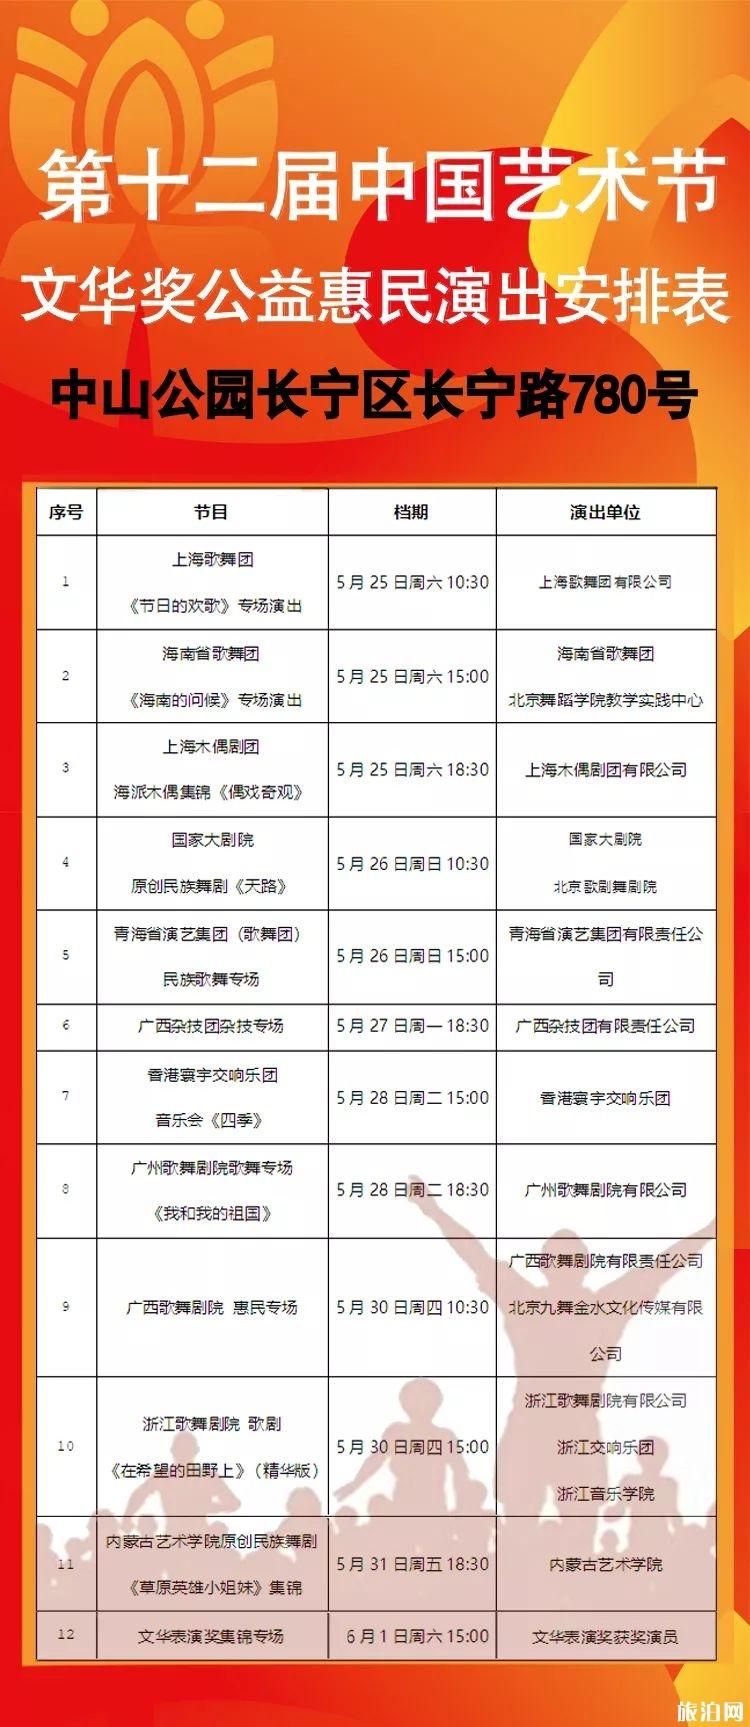 第十二届中国艺术节购票+演出安排表